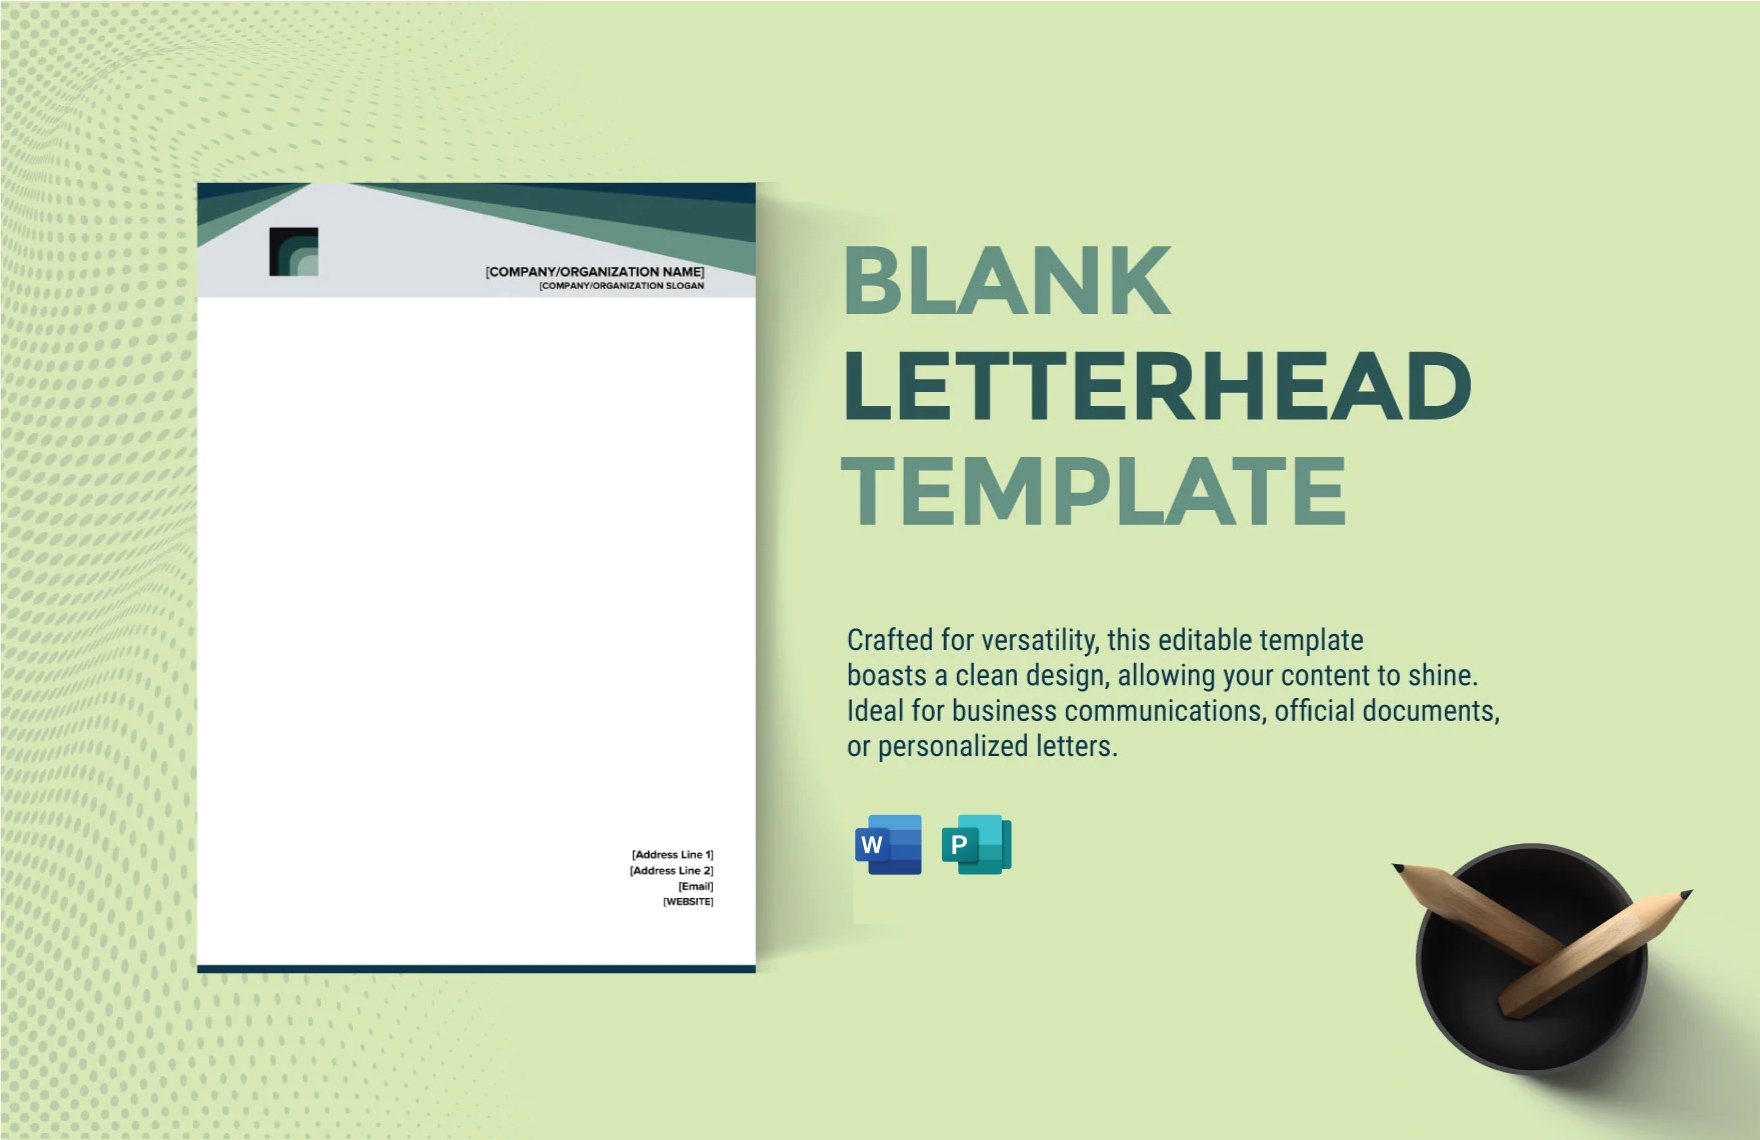 Blank Letterhead Template in Word, Publisher